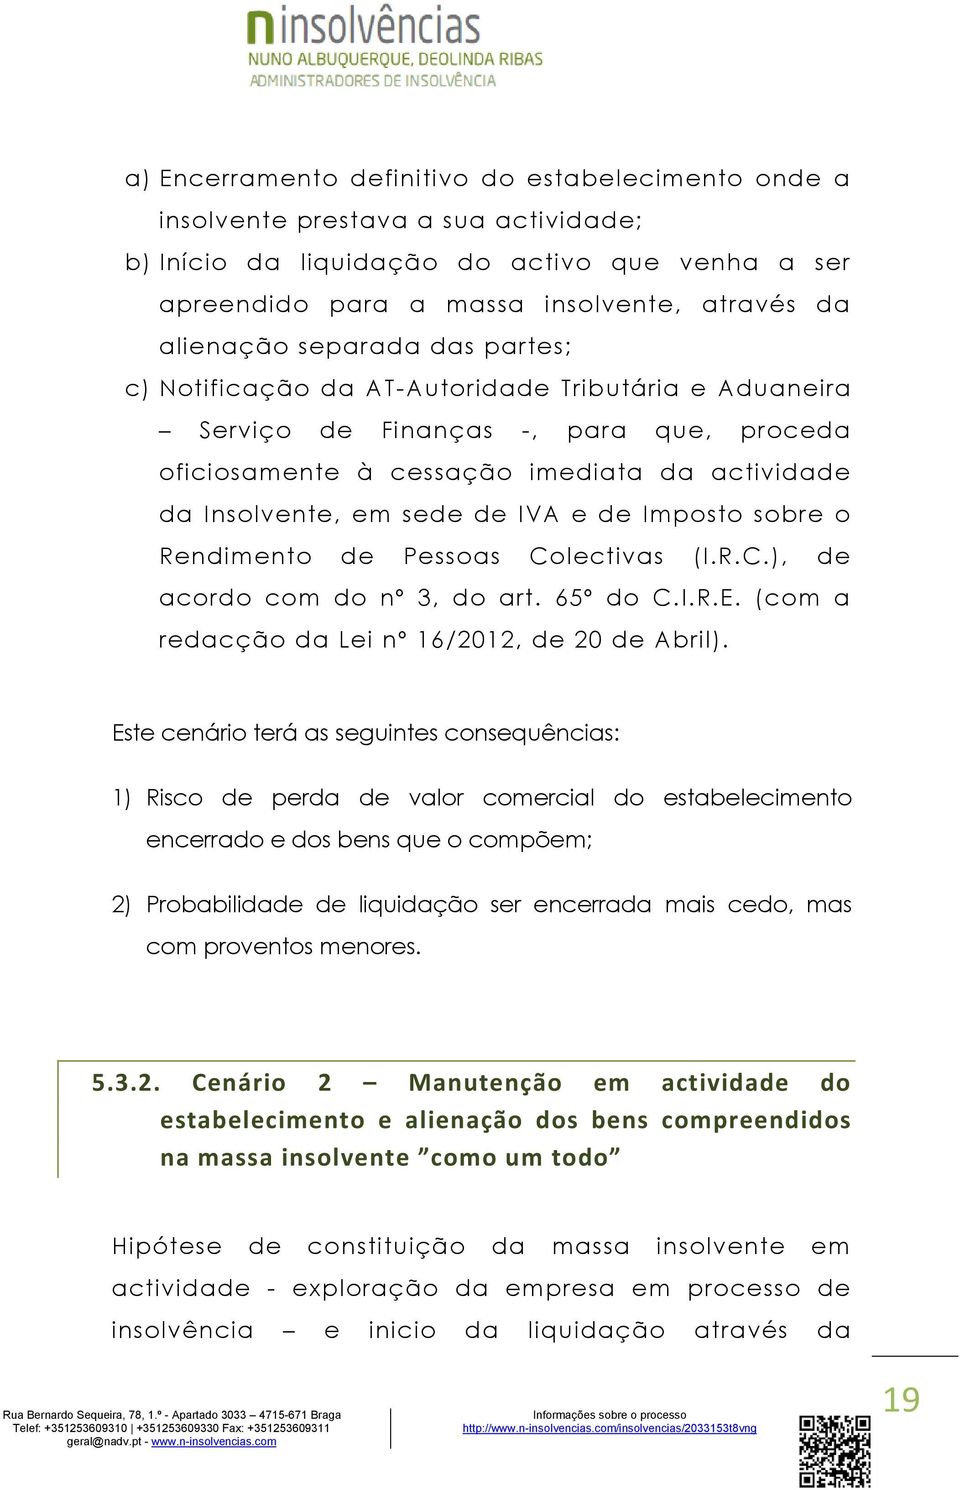 Imposto sobre o Rendimento de Pessoas Colectivas (I.R.C.), de acordo com do nº 3, do art. 65º do C.I.R.E. (com a redacção da Lei nº 16/2012, de 20 de Abril).